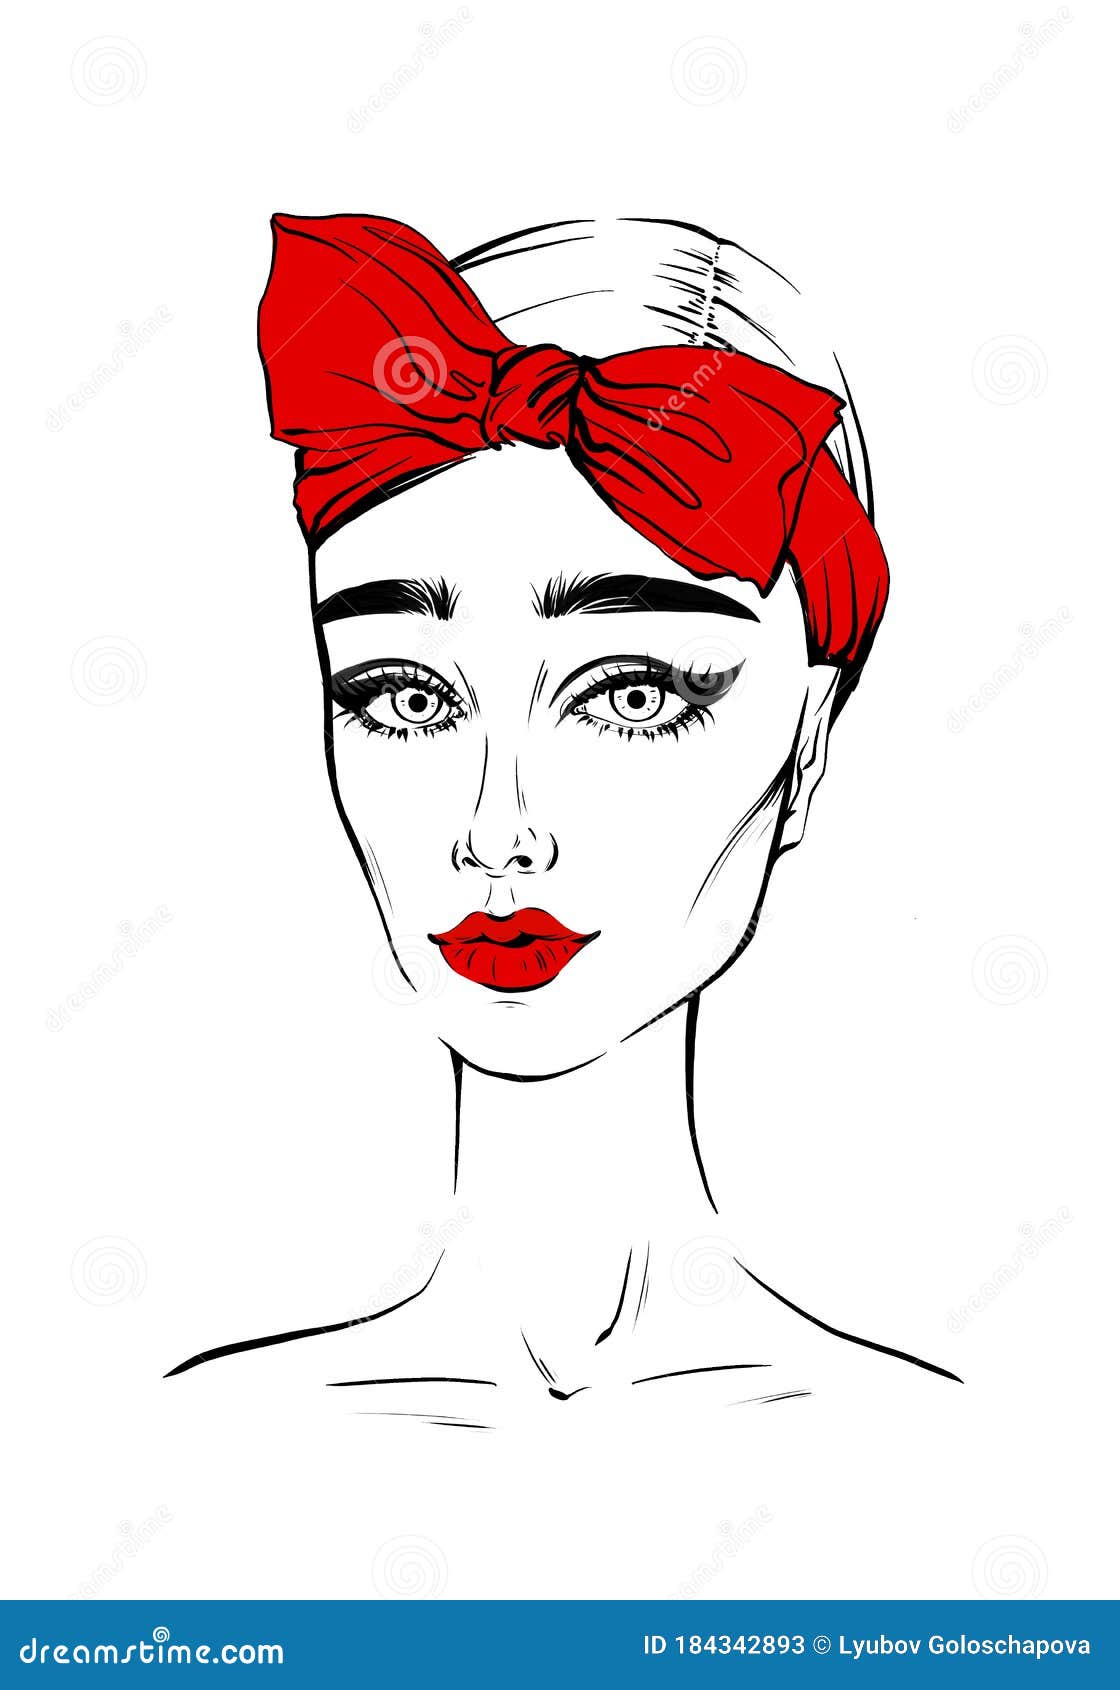 Estilo Mujer En Dibujo a Mano De La Bufanda. Ilustración De Retrato De Moda Realista De La Mujer En Arco De Peinado Rojo. Gat de ilustración - Ilustración de belleza,